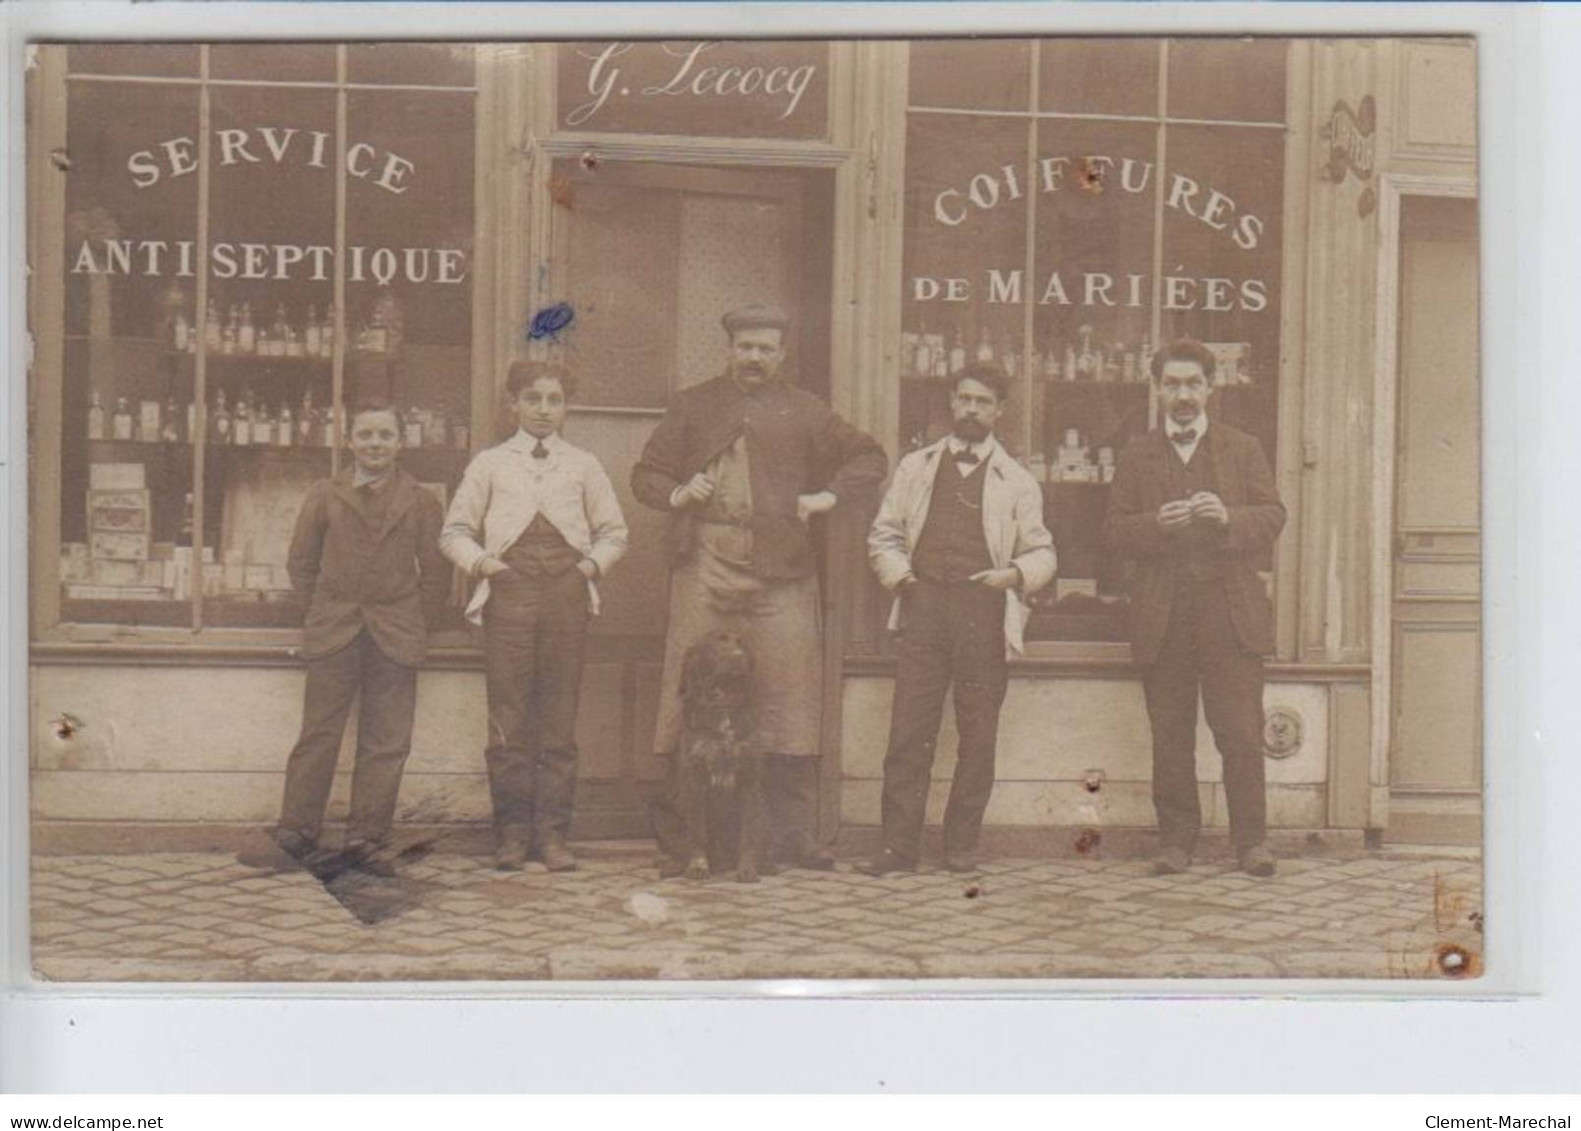 FRANCE - Coiffeur Raymond Plein, G. Lecocq, Service Antiseptique, Coiffures De Mariées Chien - état - Foto's